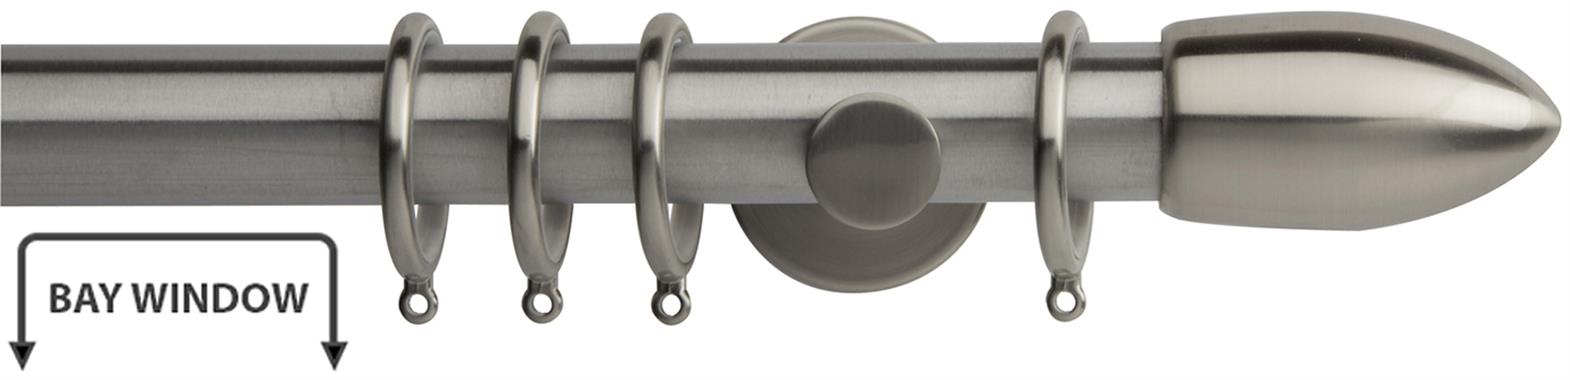 Neo 35mm Bay Window Pole Stainless Steel Bullet